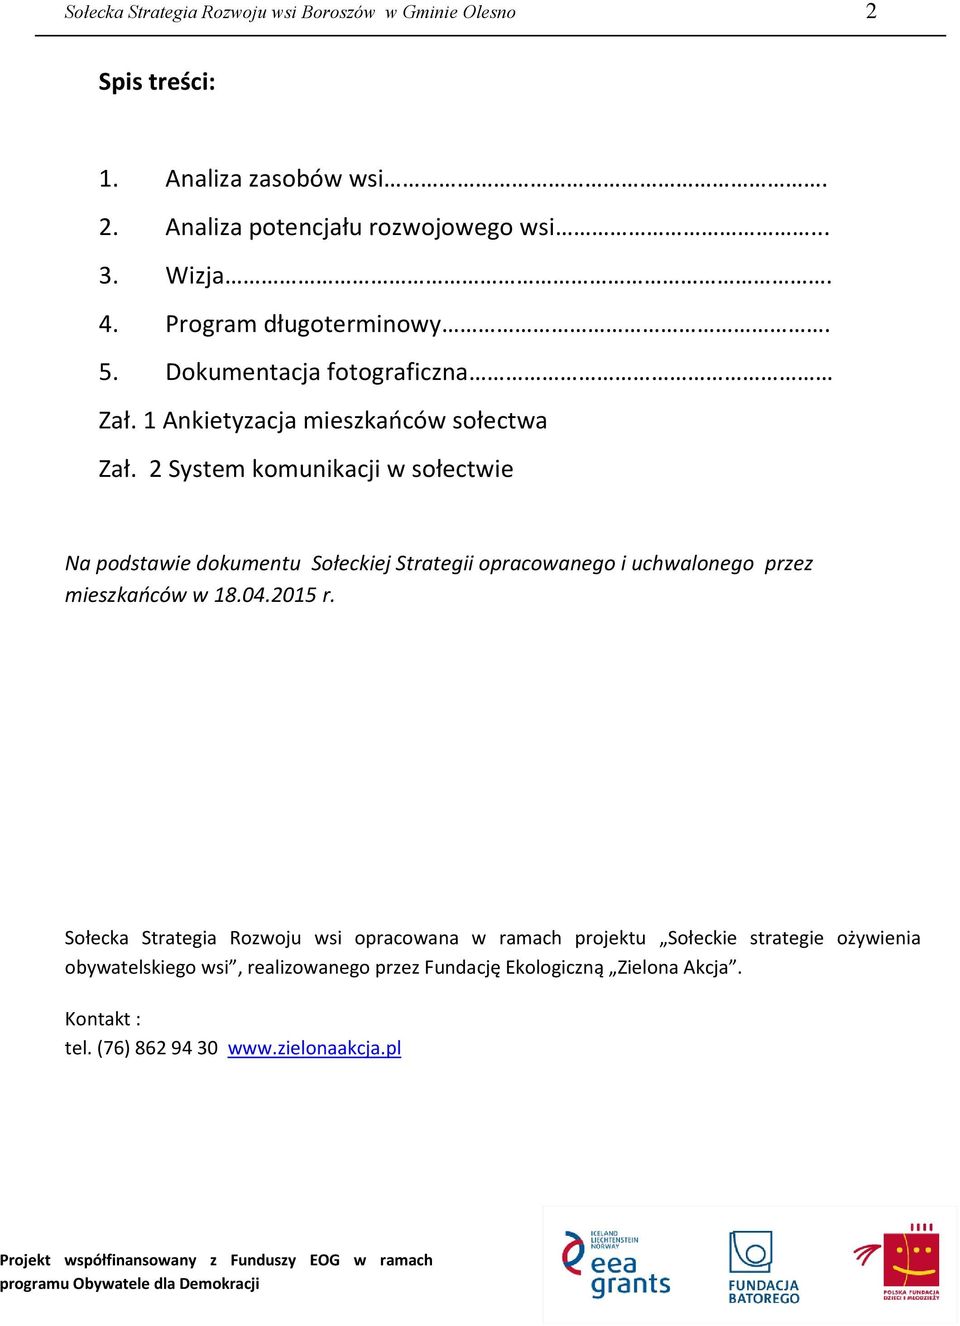 2 System komunikacji w sołectwie Na podstawie dokumentu Sołeckiej Strategii opracowanego i uchwalonego przez mieszkańców w 18.04.2015 r.